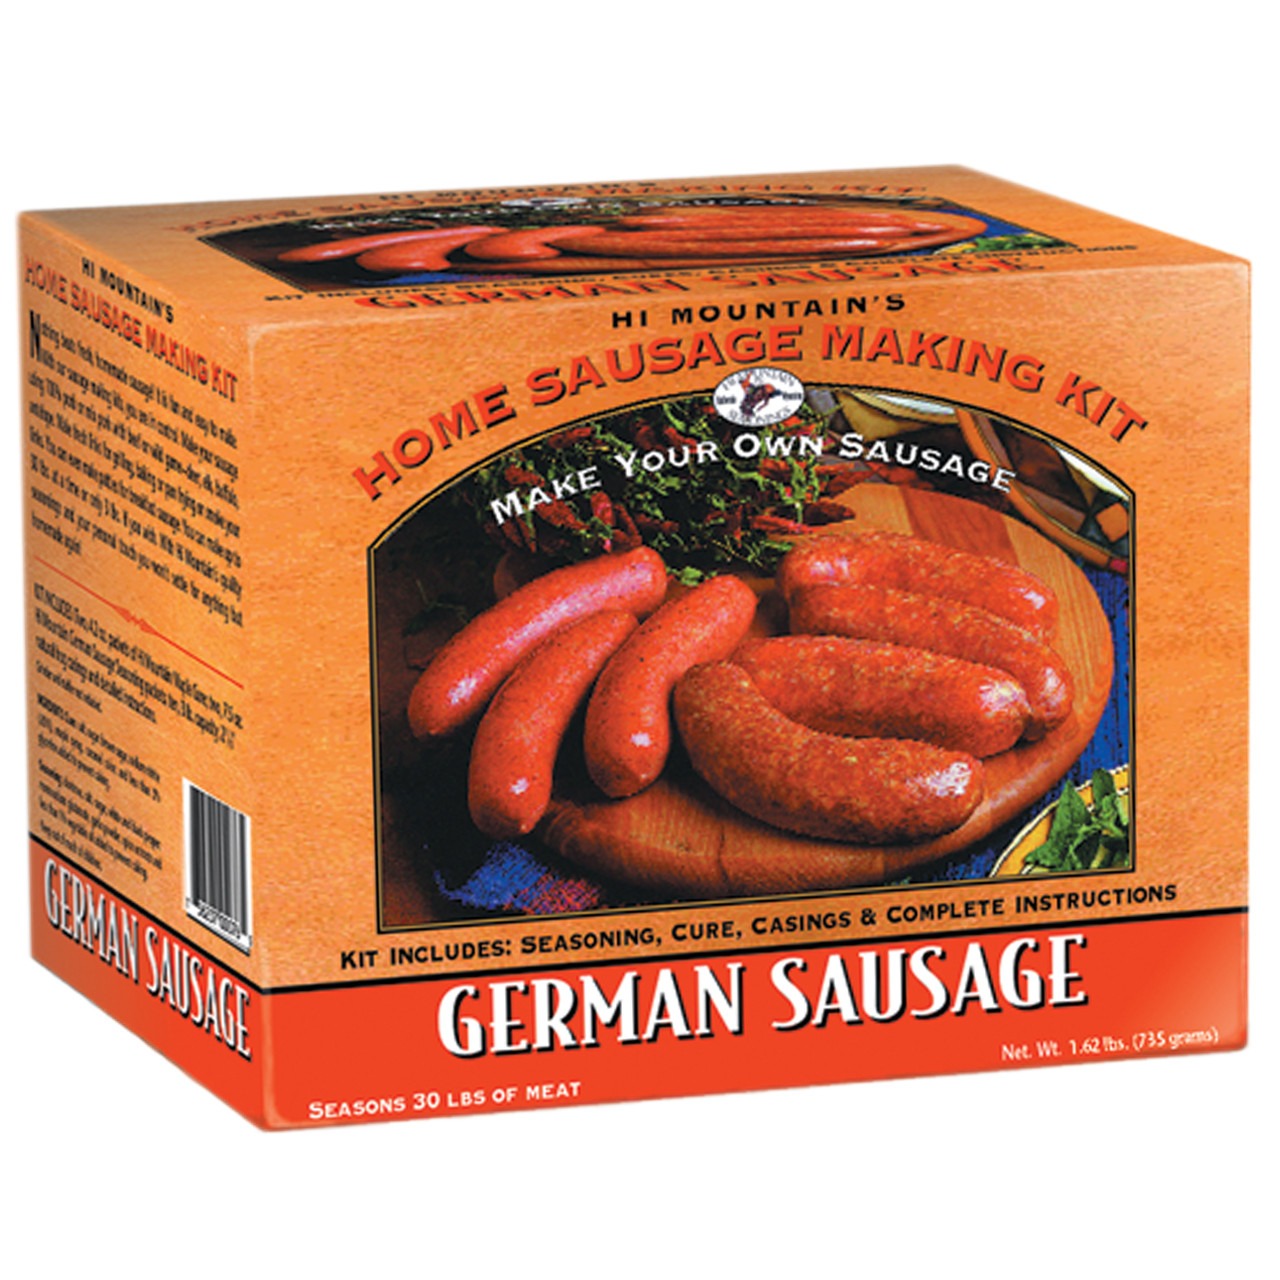 Hi Mountain German Sausage Making Kit 1.62lb